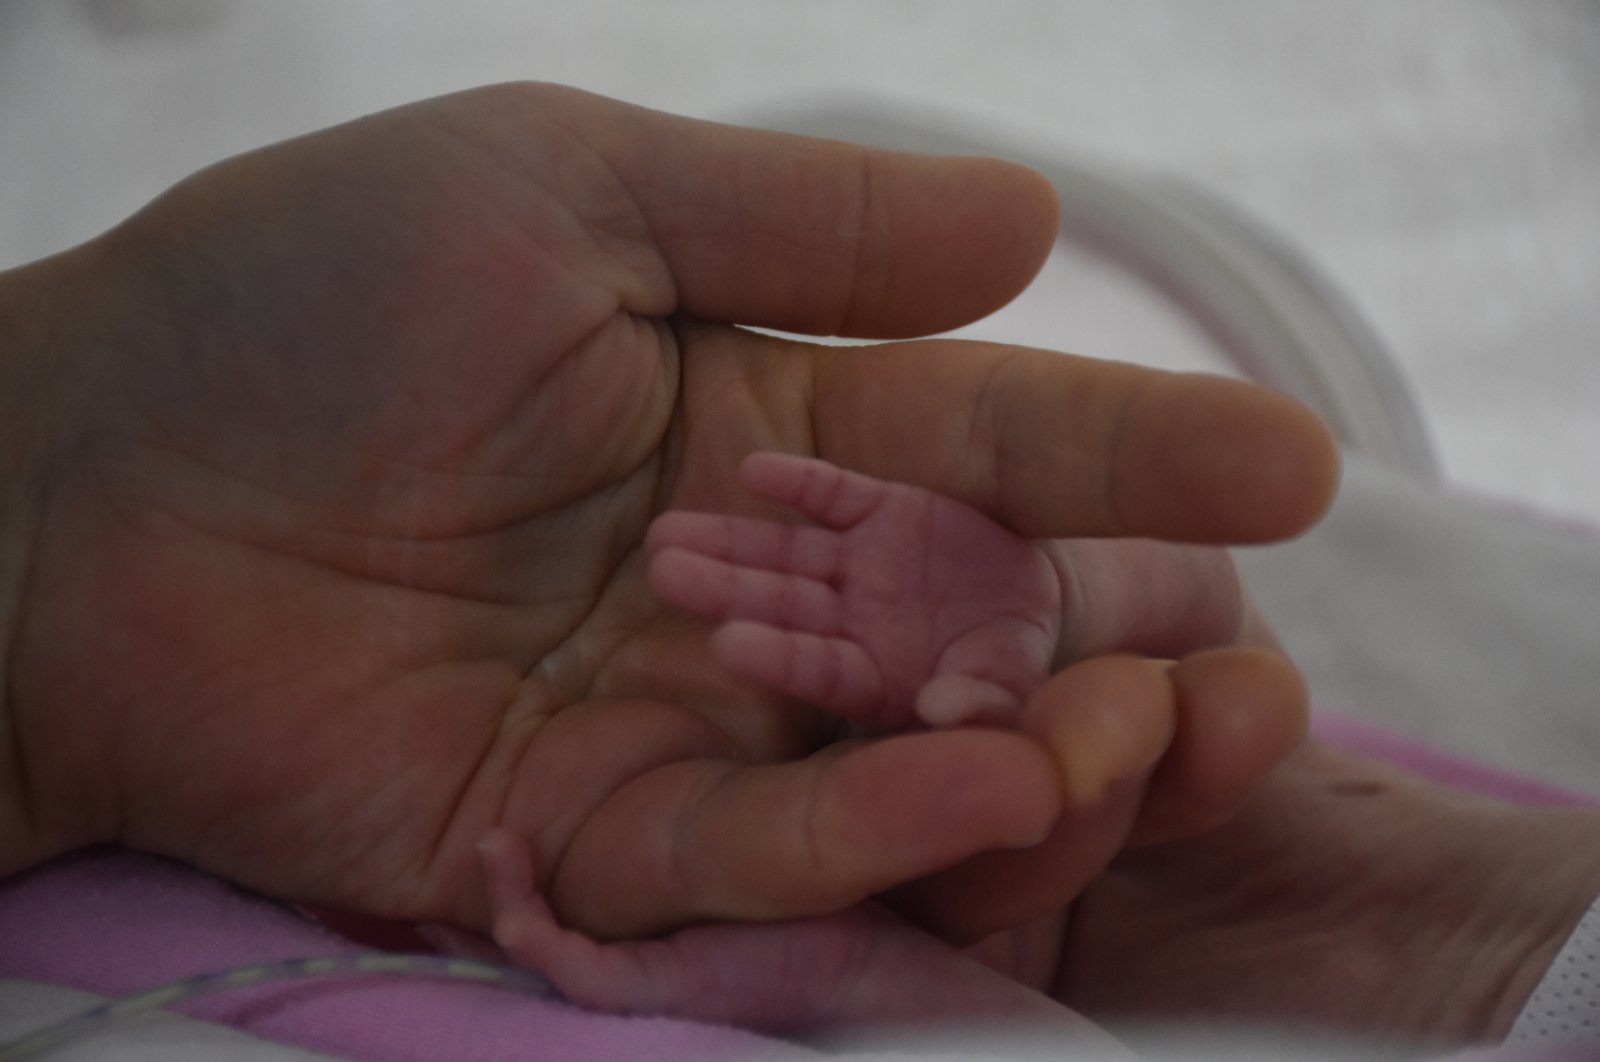 Türkiye melihat peningkatan kelahiran prematur